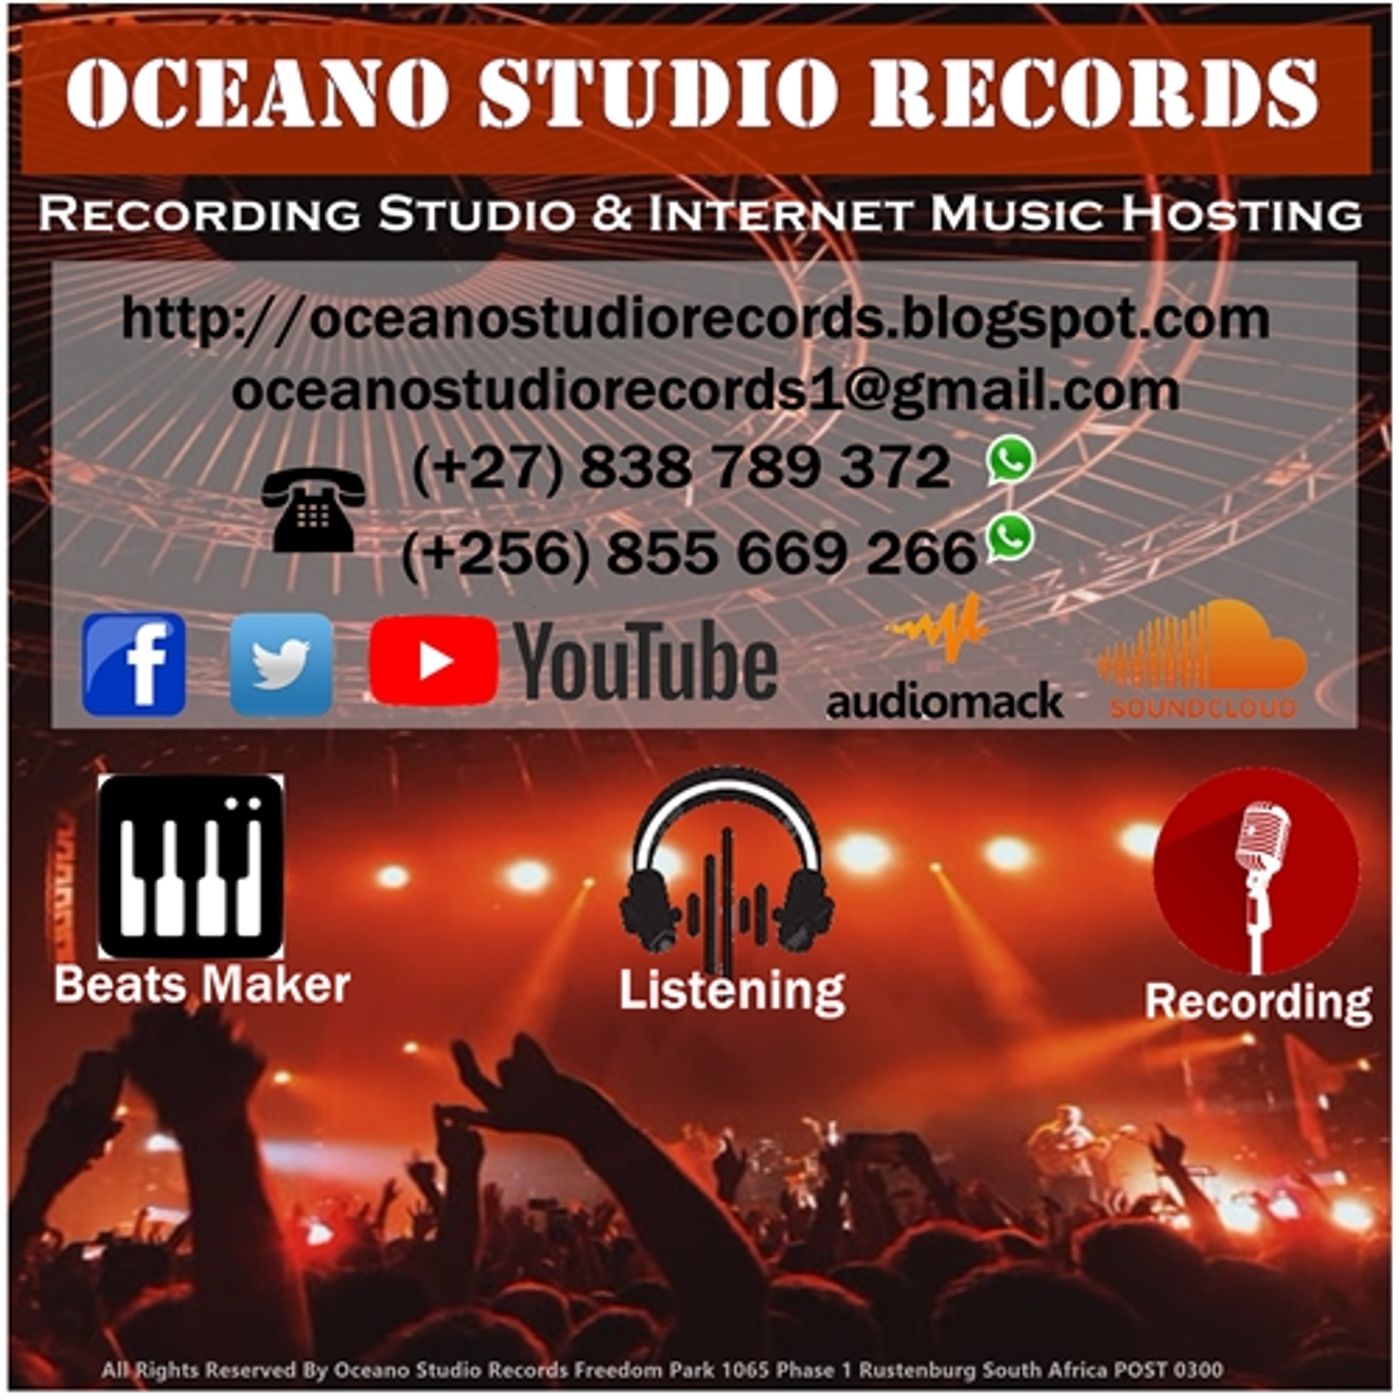 Oceano Studio Records